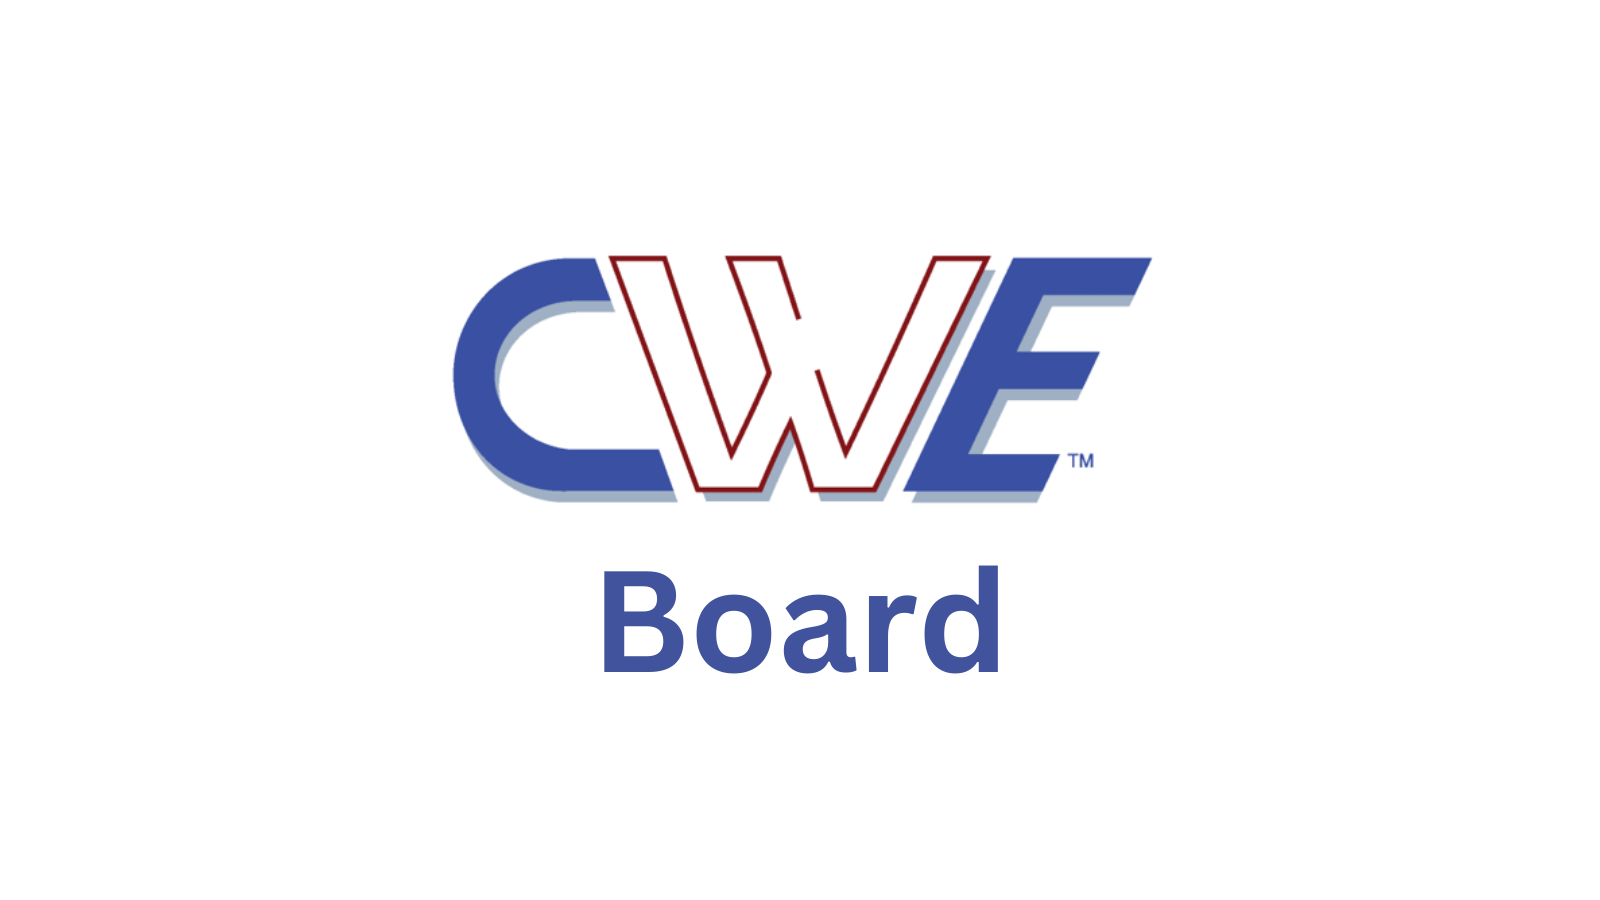 CWE Board